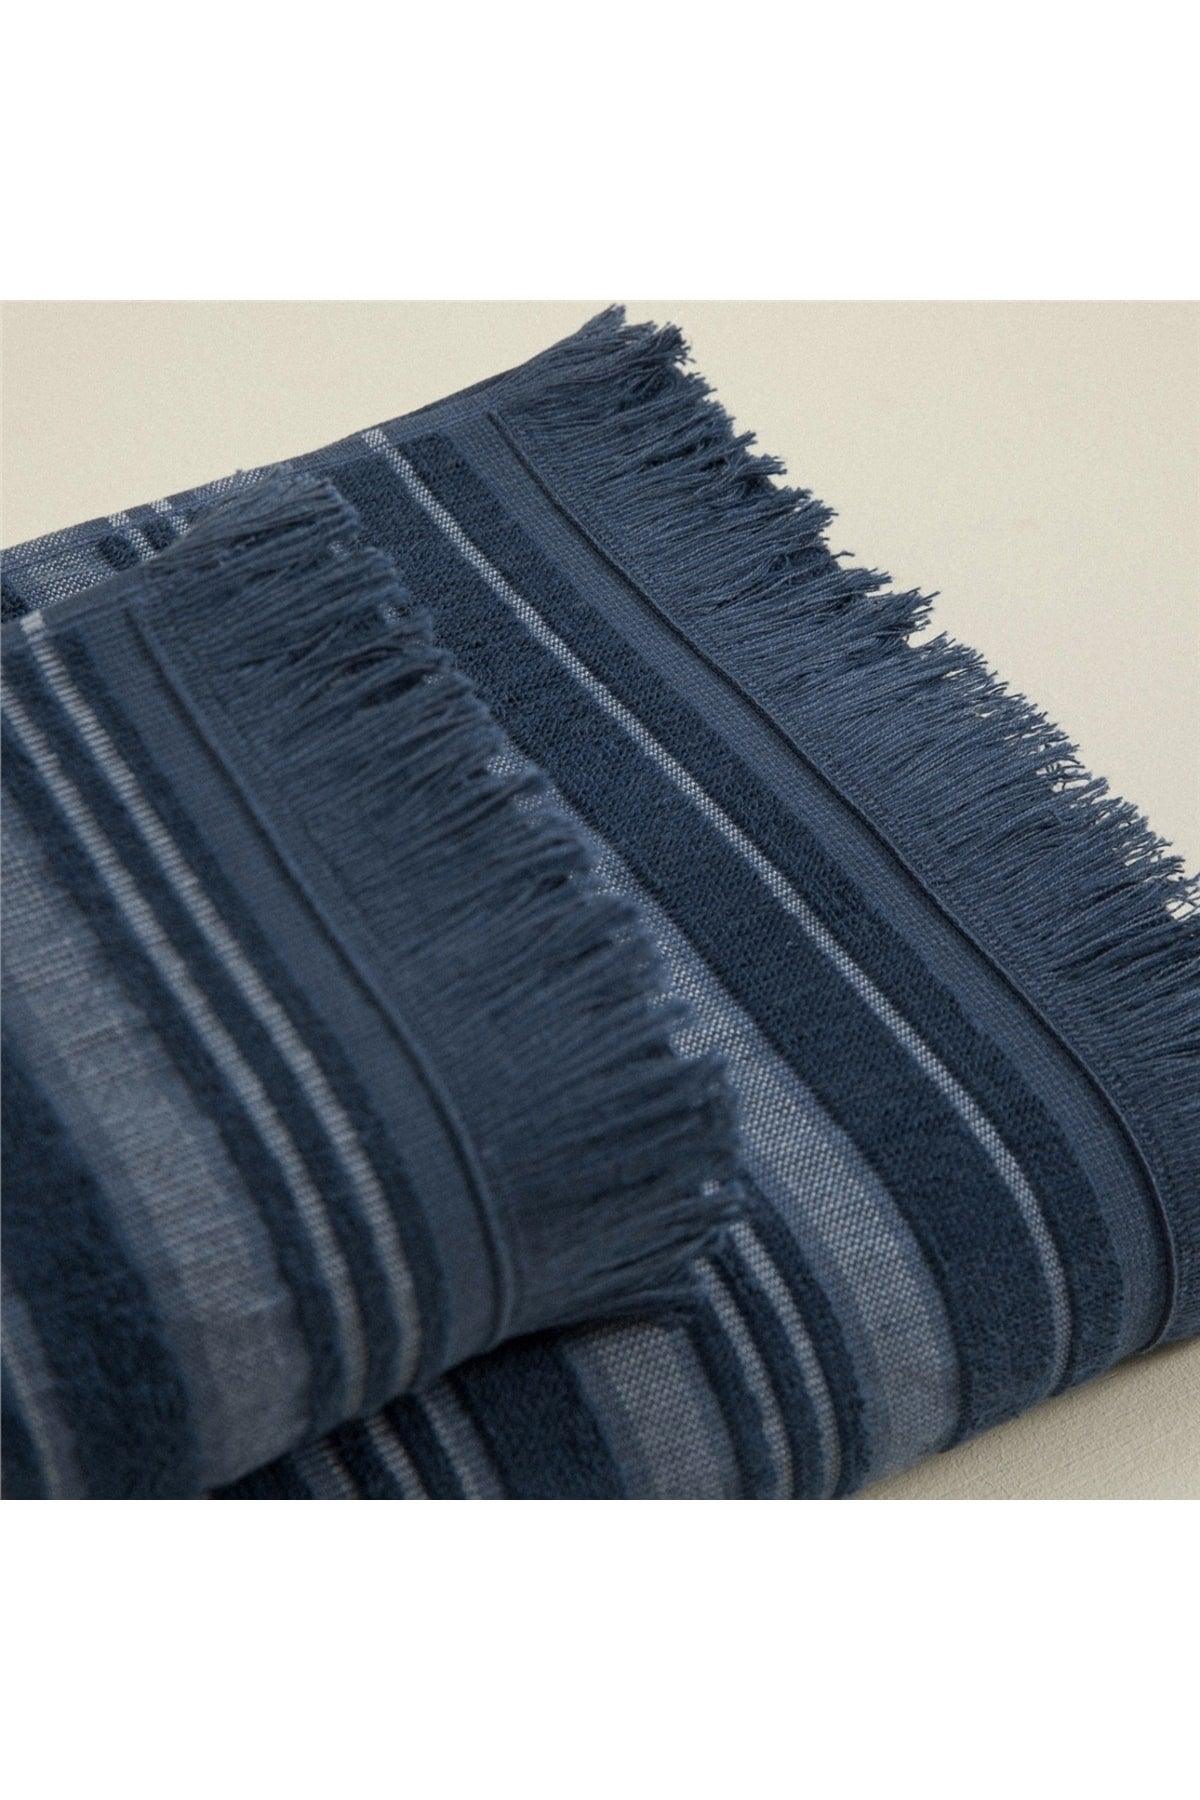 Deep Face Towel 50x90 Cm Marin Blue/aqua - Swordslife